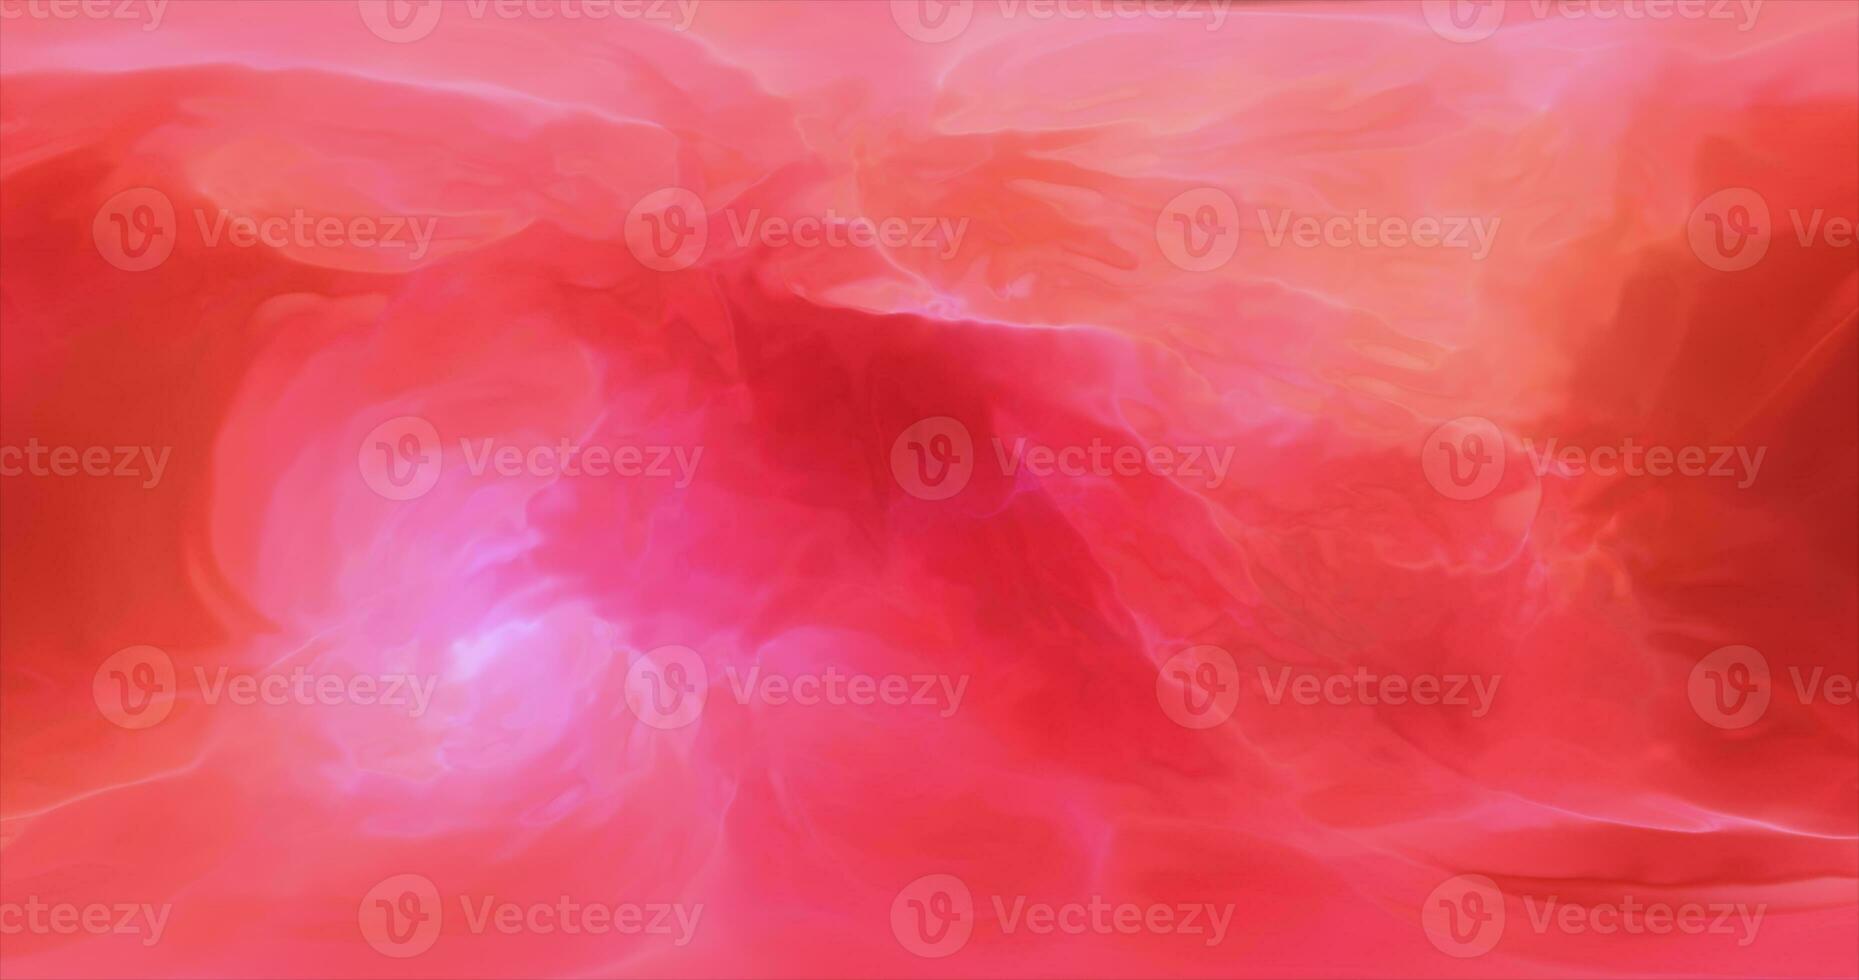 abstrakt rot irisierend mehrfarbig Energie magisch hell glühend Flüssigkeit Plasma Hintergrund foto